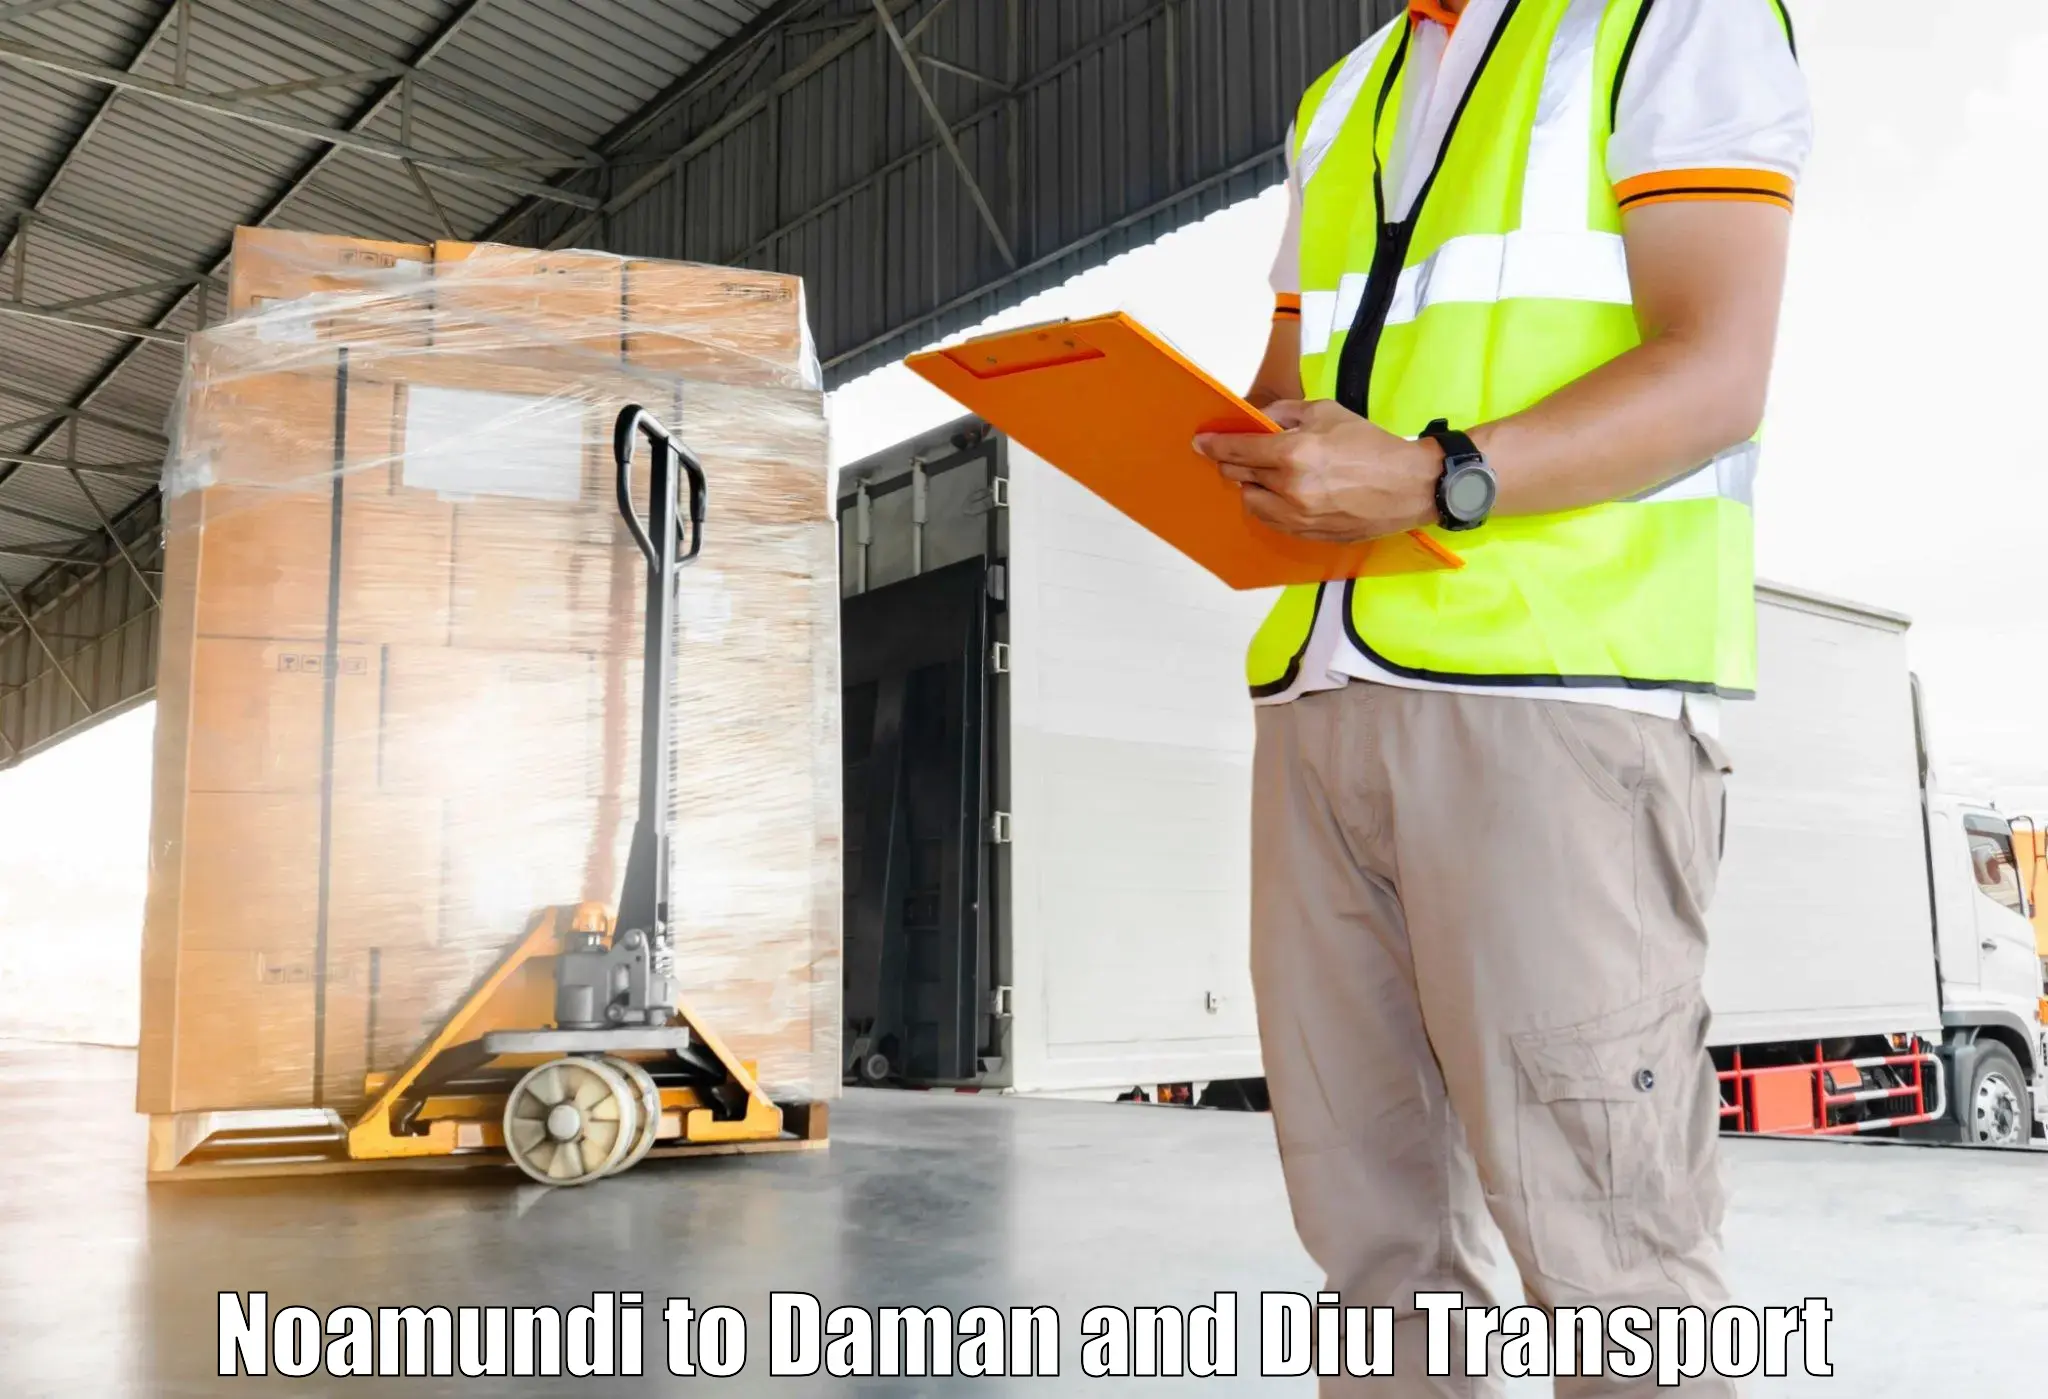 Truck transport companies in India Noamundi to Diu